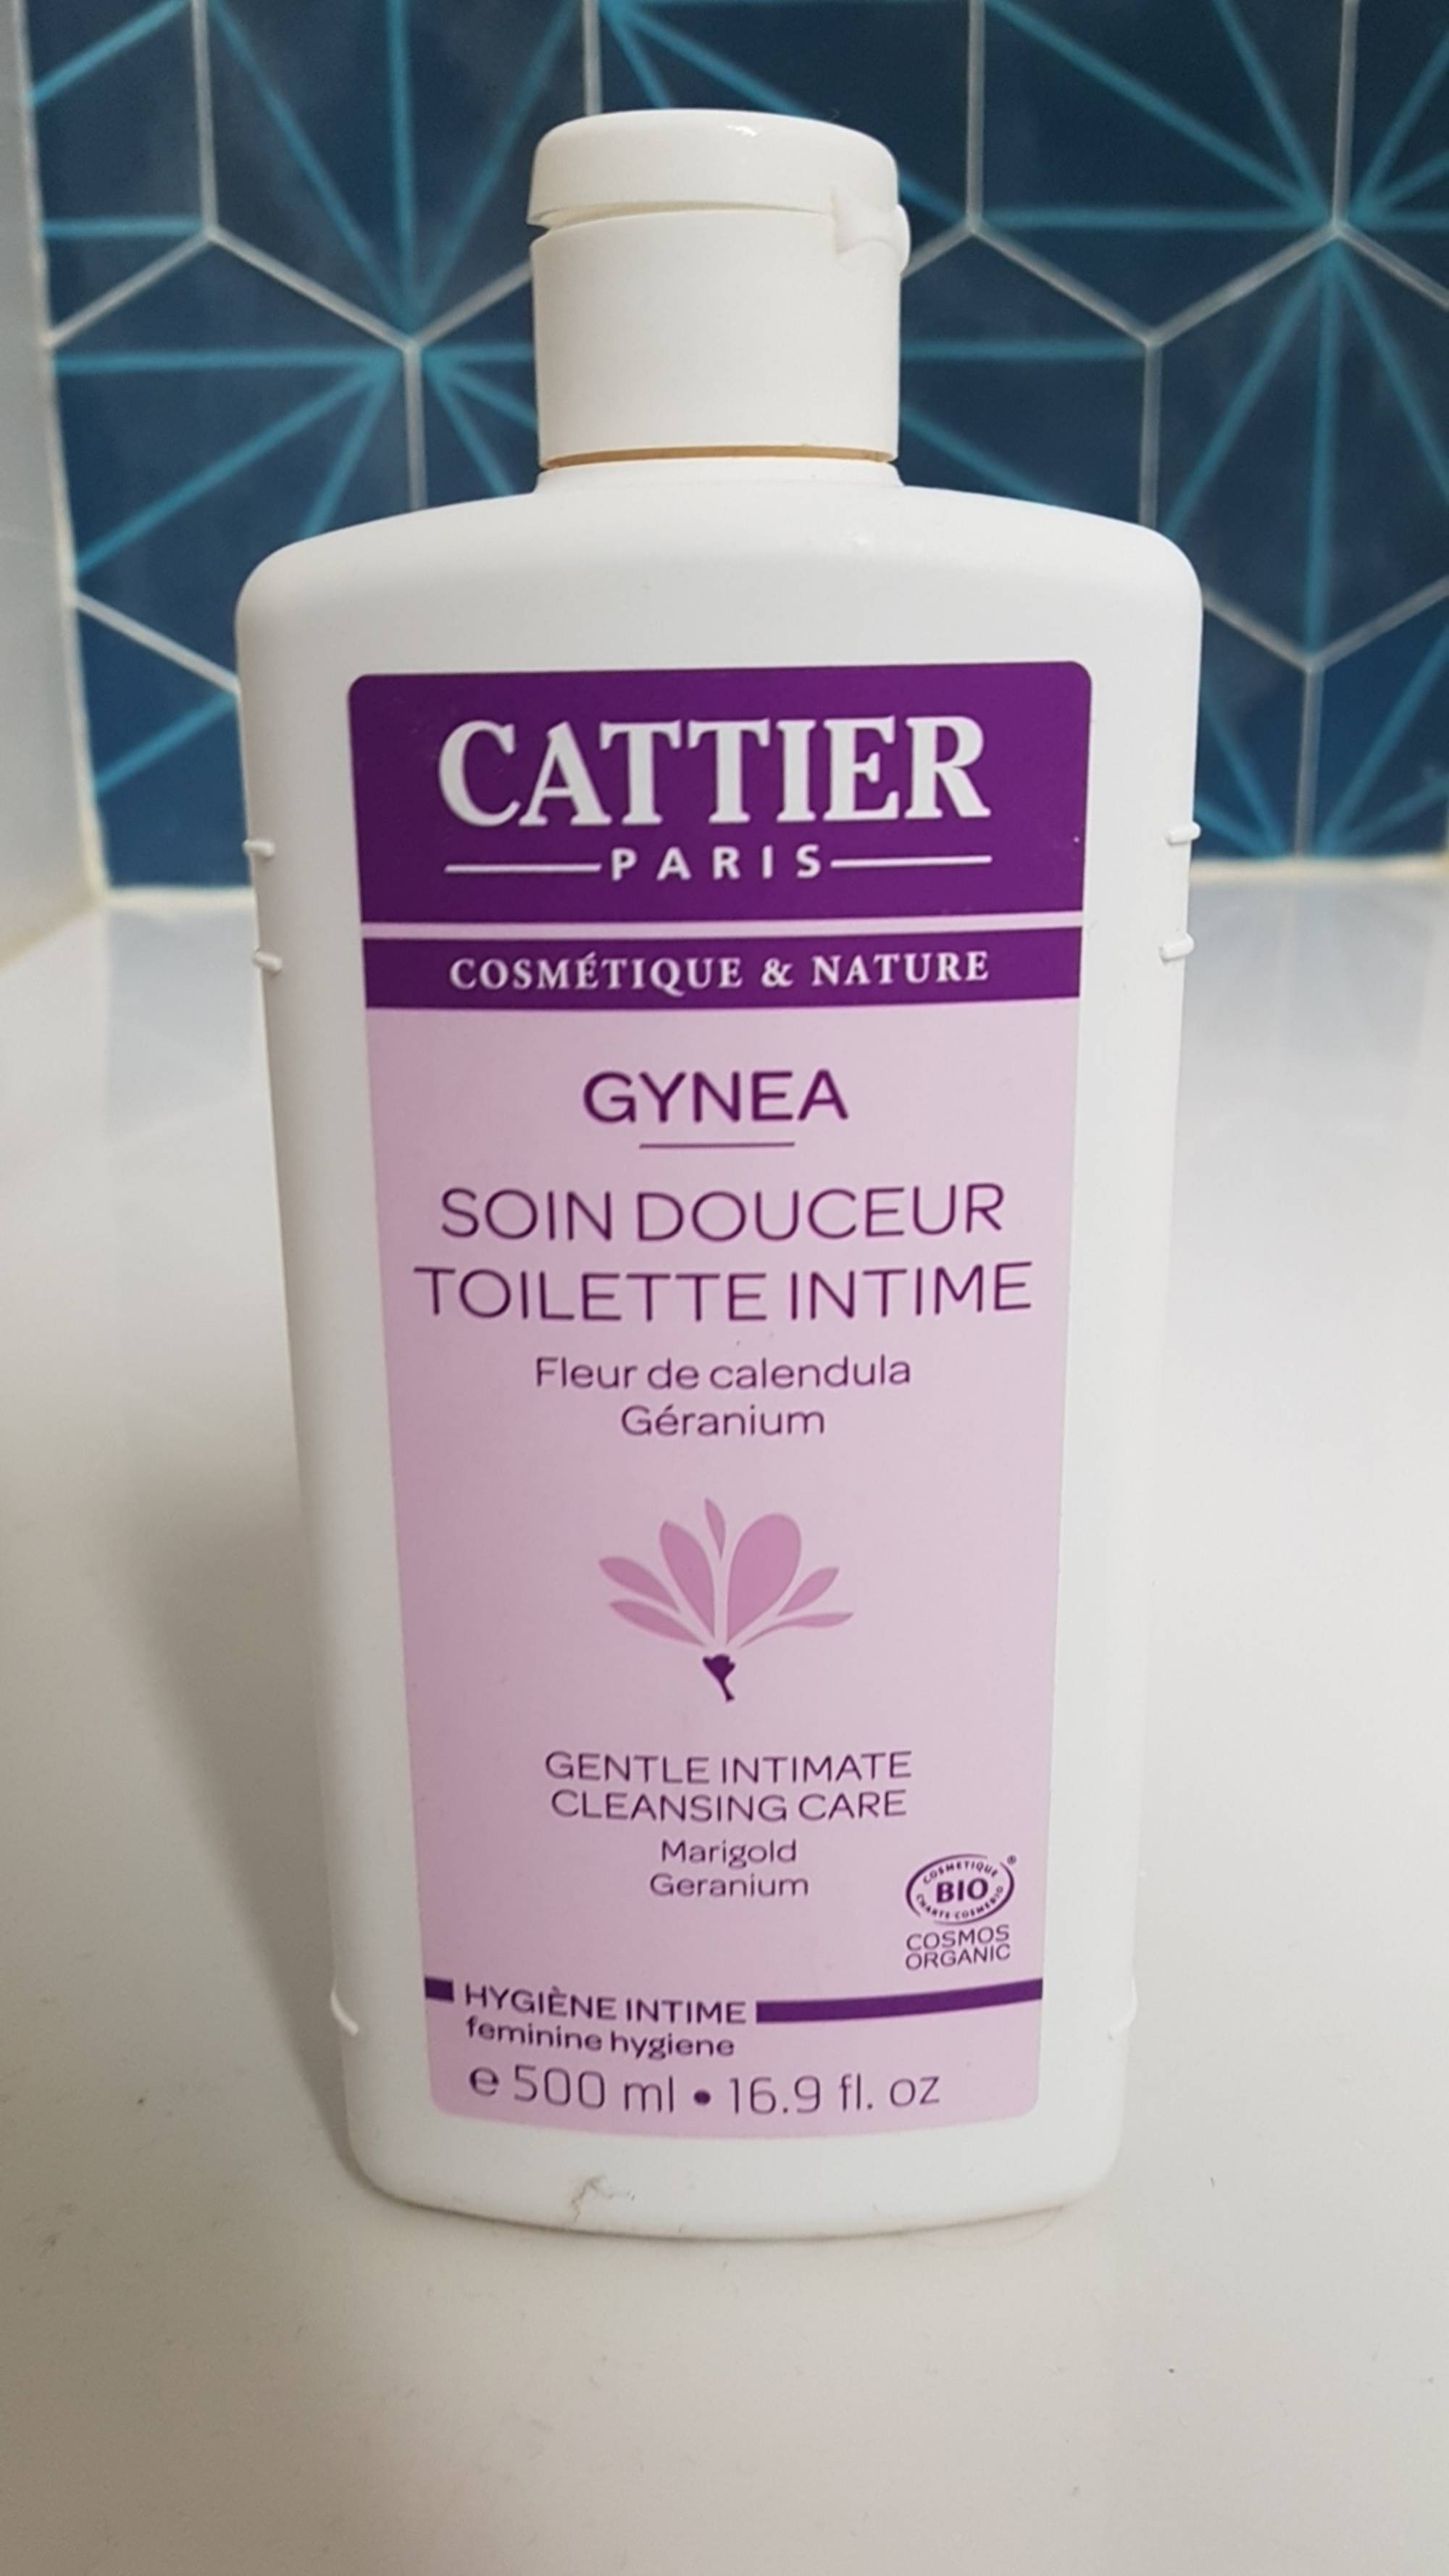 CATTIER PARIS - Gynéa - Soin douceur toilette intime